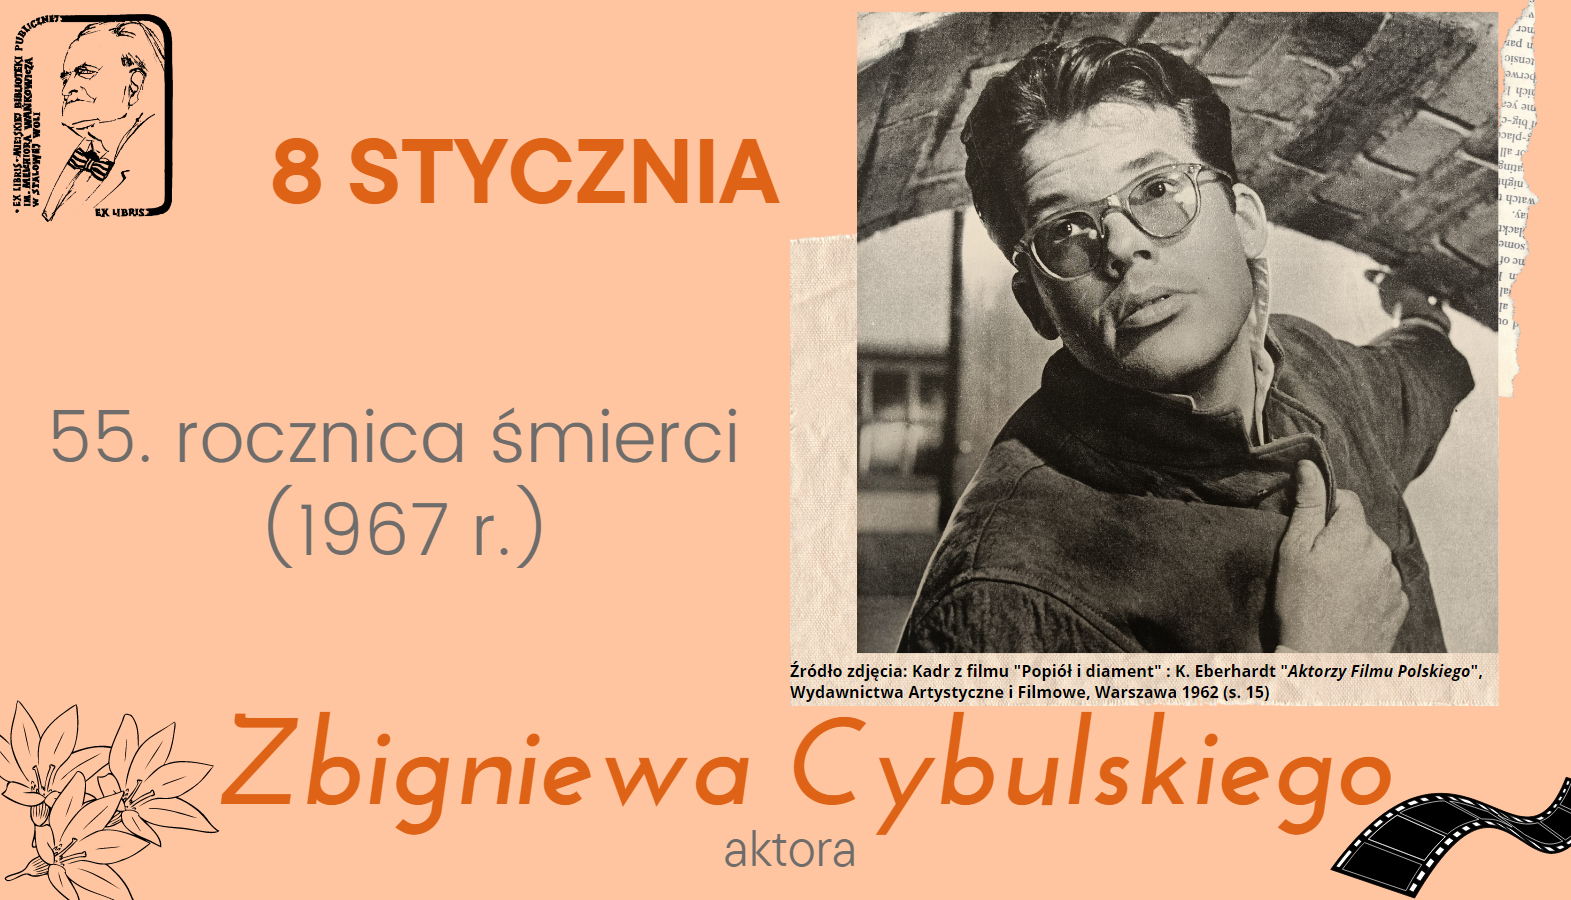 Zbigniew Cybulski – wspominamy legendę polskiego kina